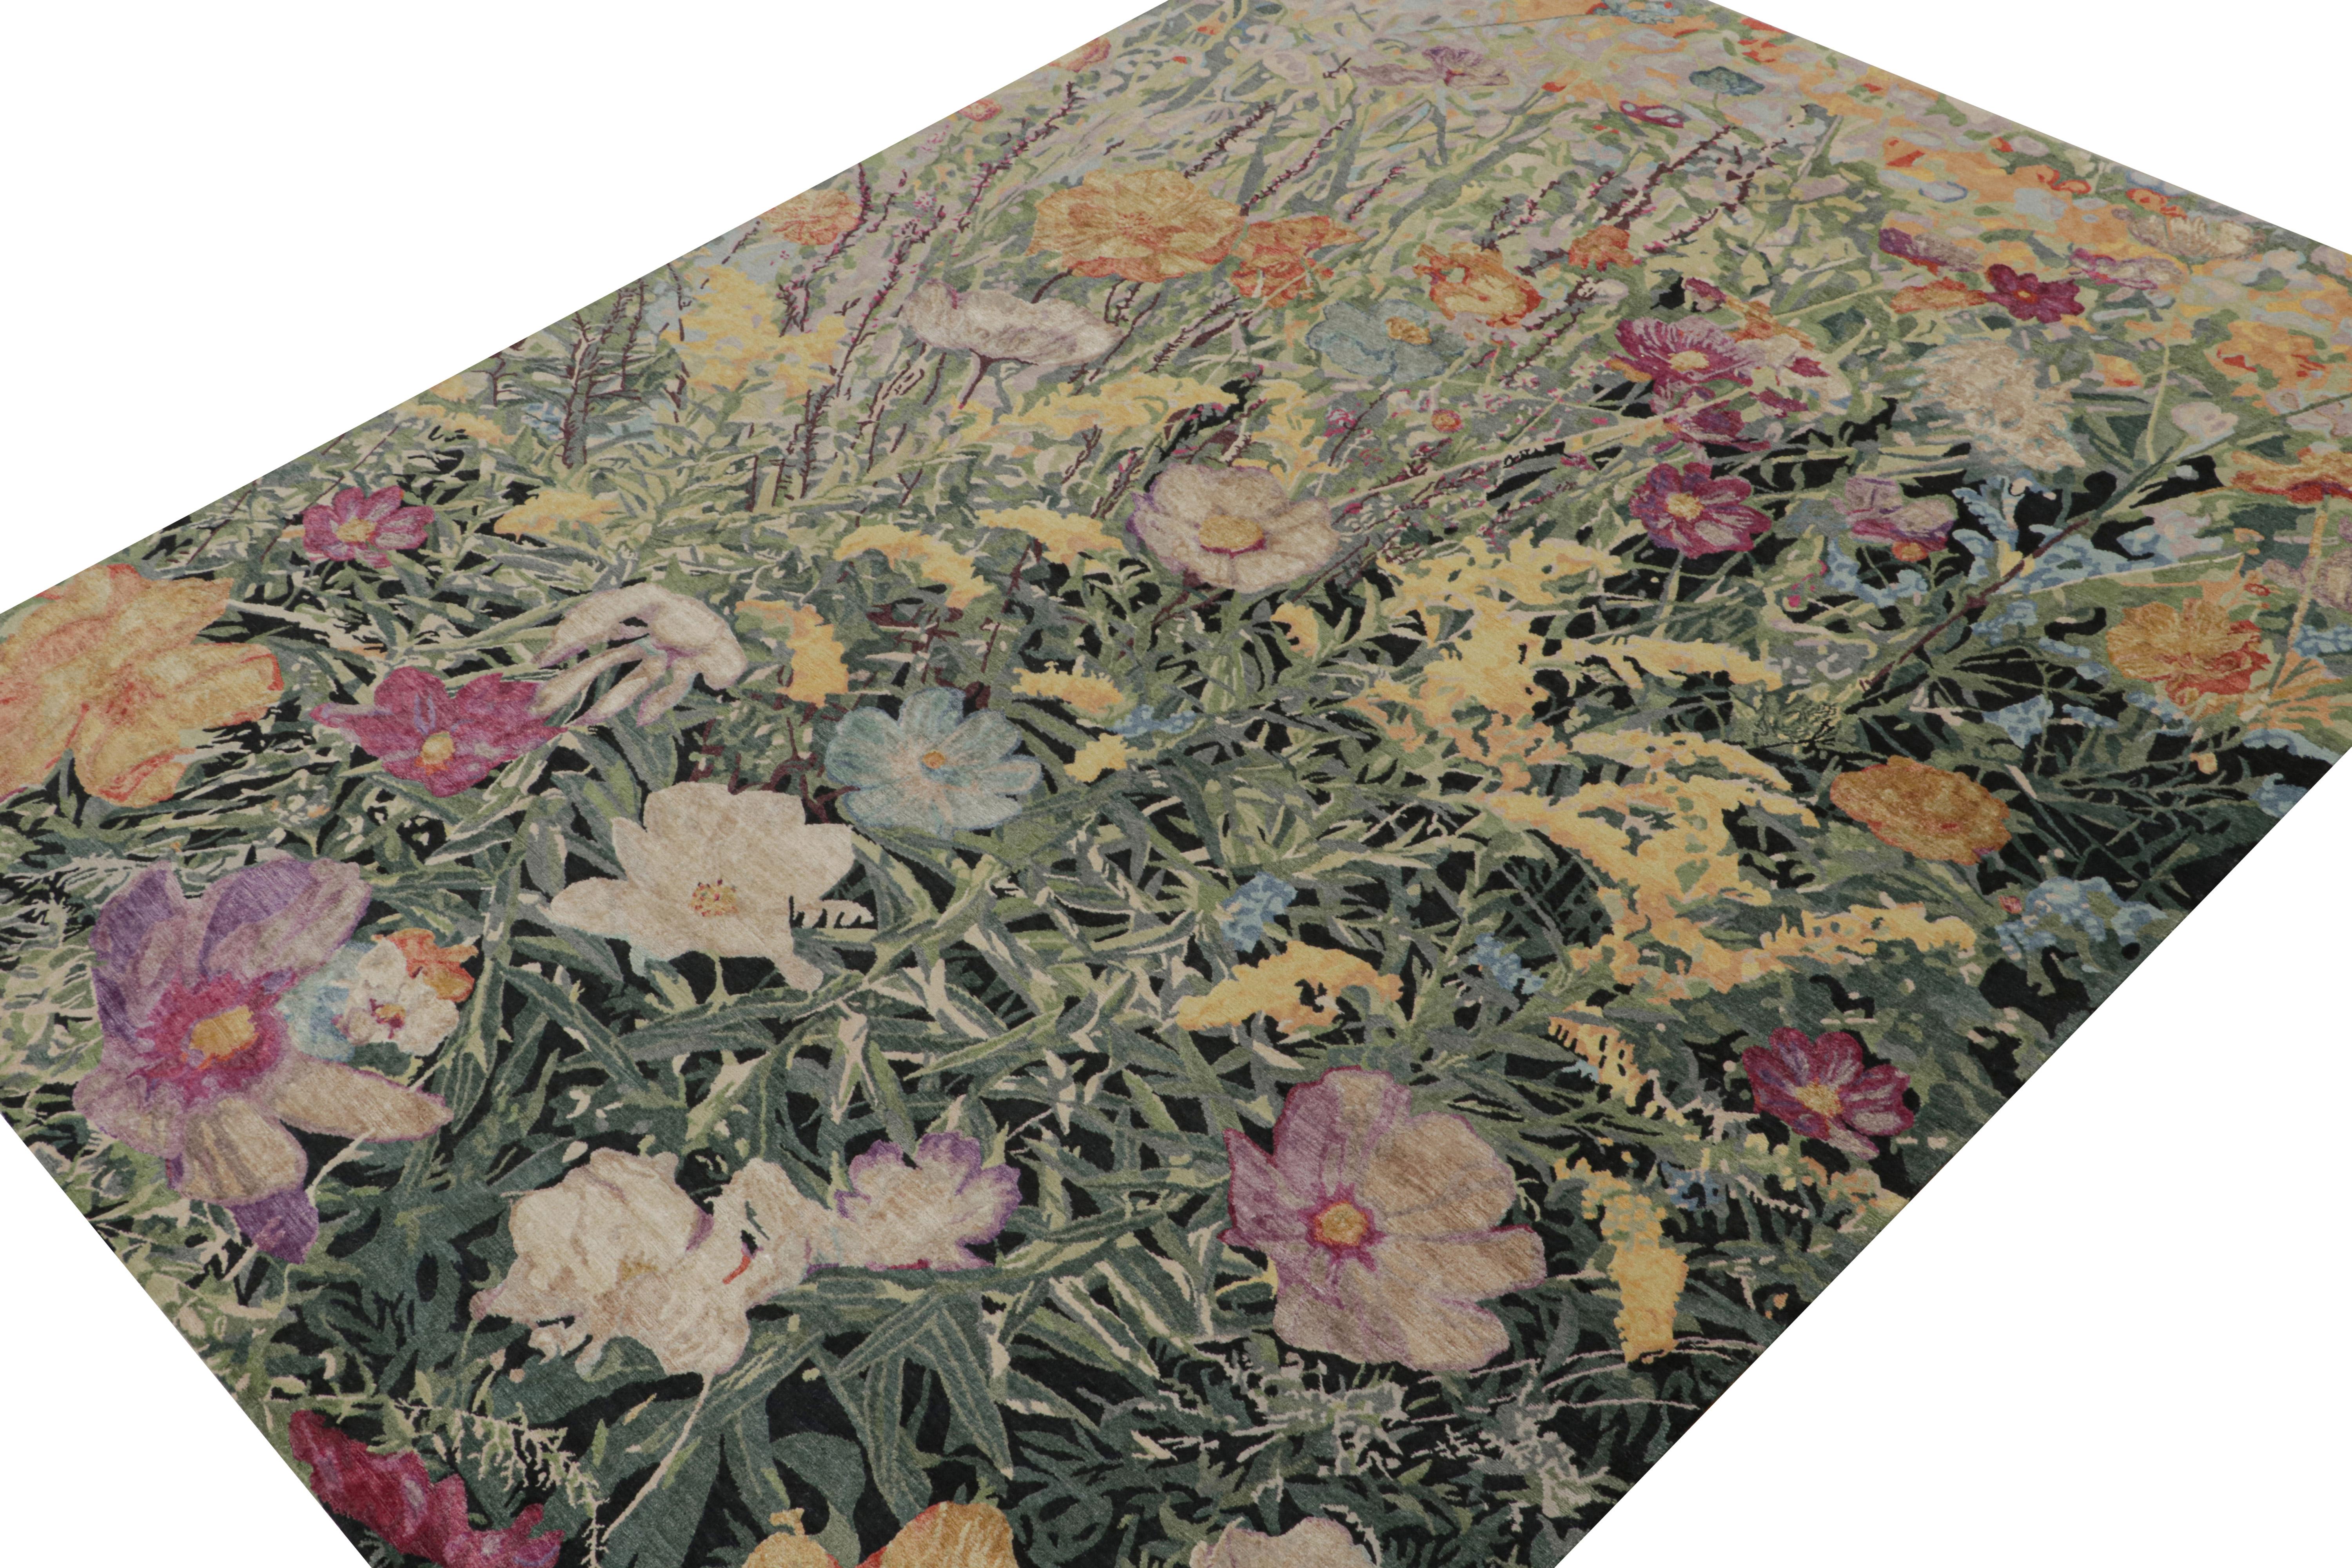 Dieser moderne botanische Teppich im Format 9x12 ist ein Neuzugang in der Modern Collection'S von Rug & Kilim - handgeknüpft aus Wolle und Seide. 

Über das Design:

Der Teppich weist ein flächendeckendes Blumenmuster auf, das von